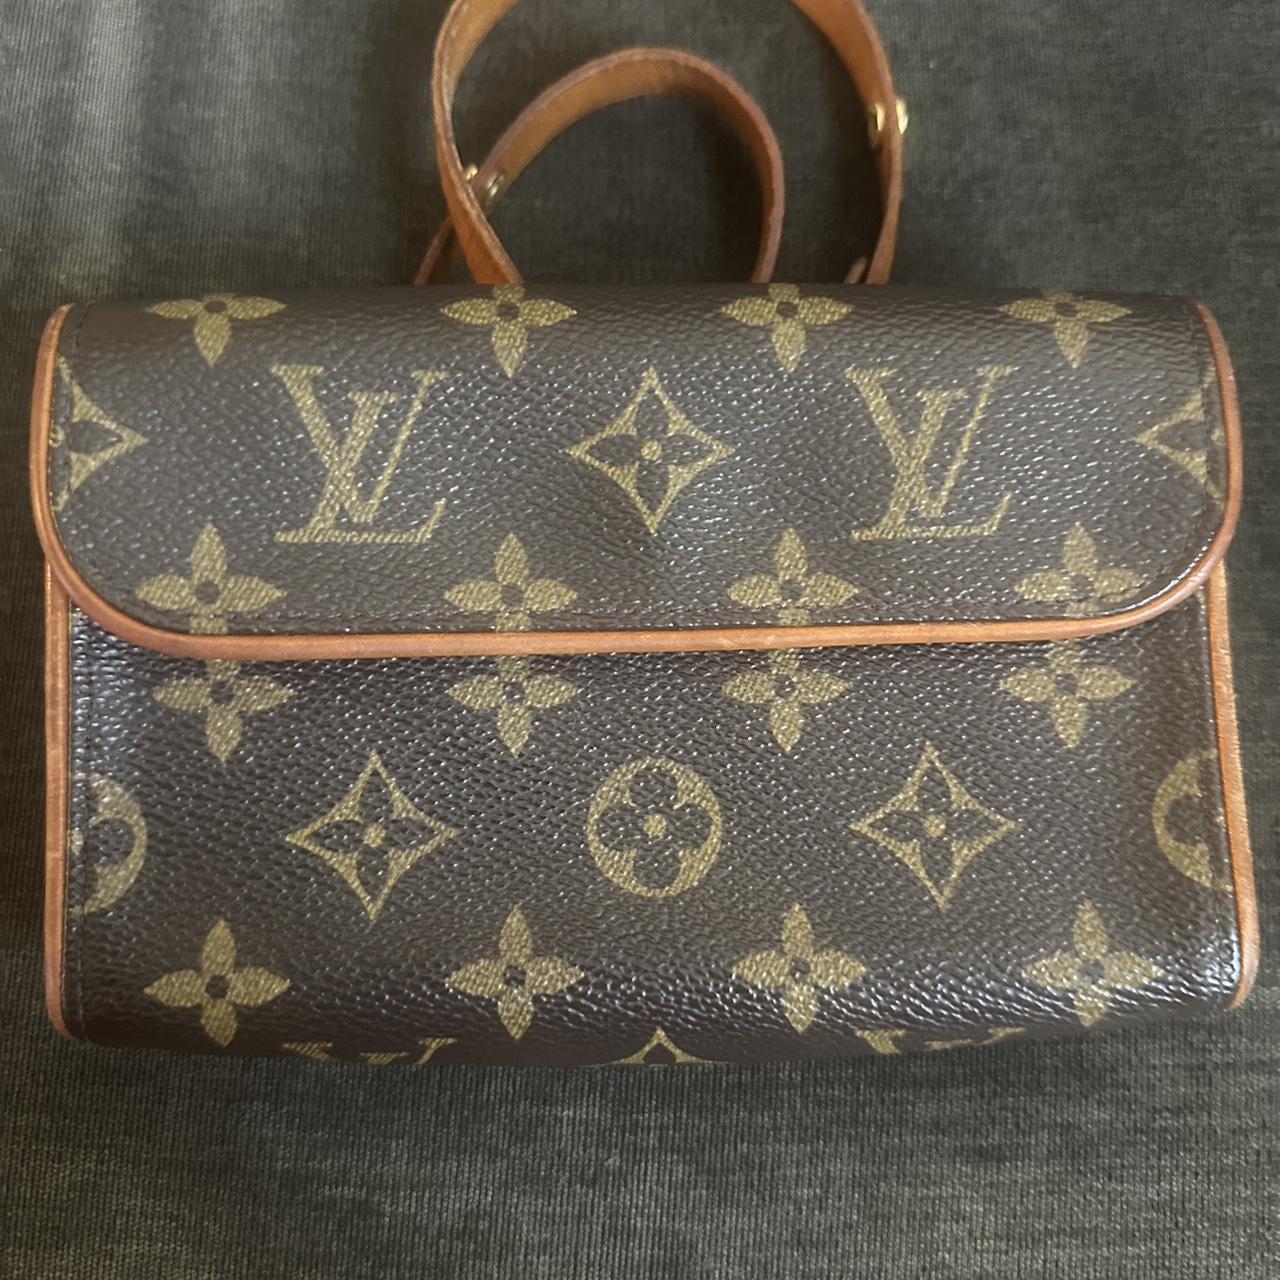 Louis Vuitton Speedy 30 (SP 0947) Brown monogram - Depop